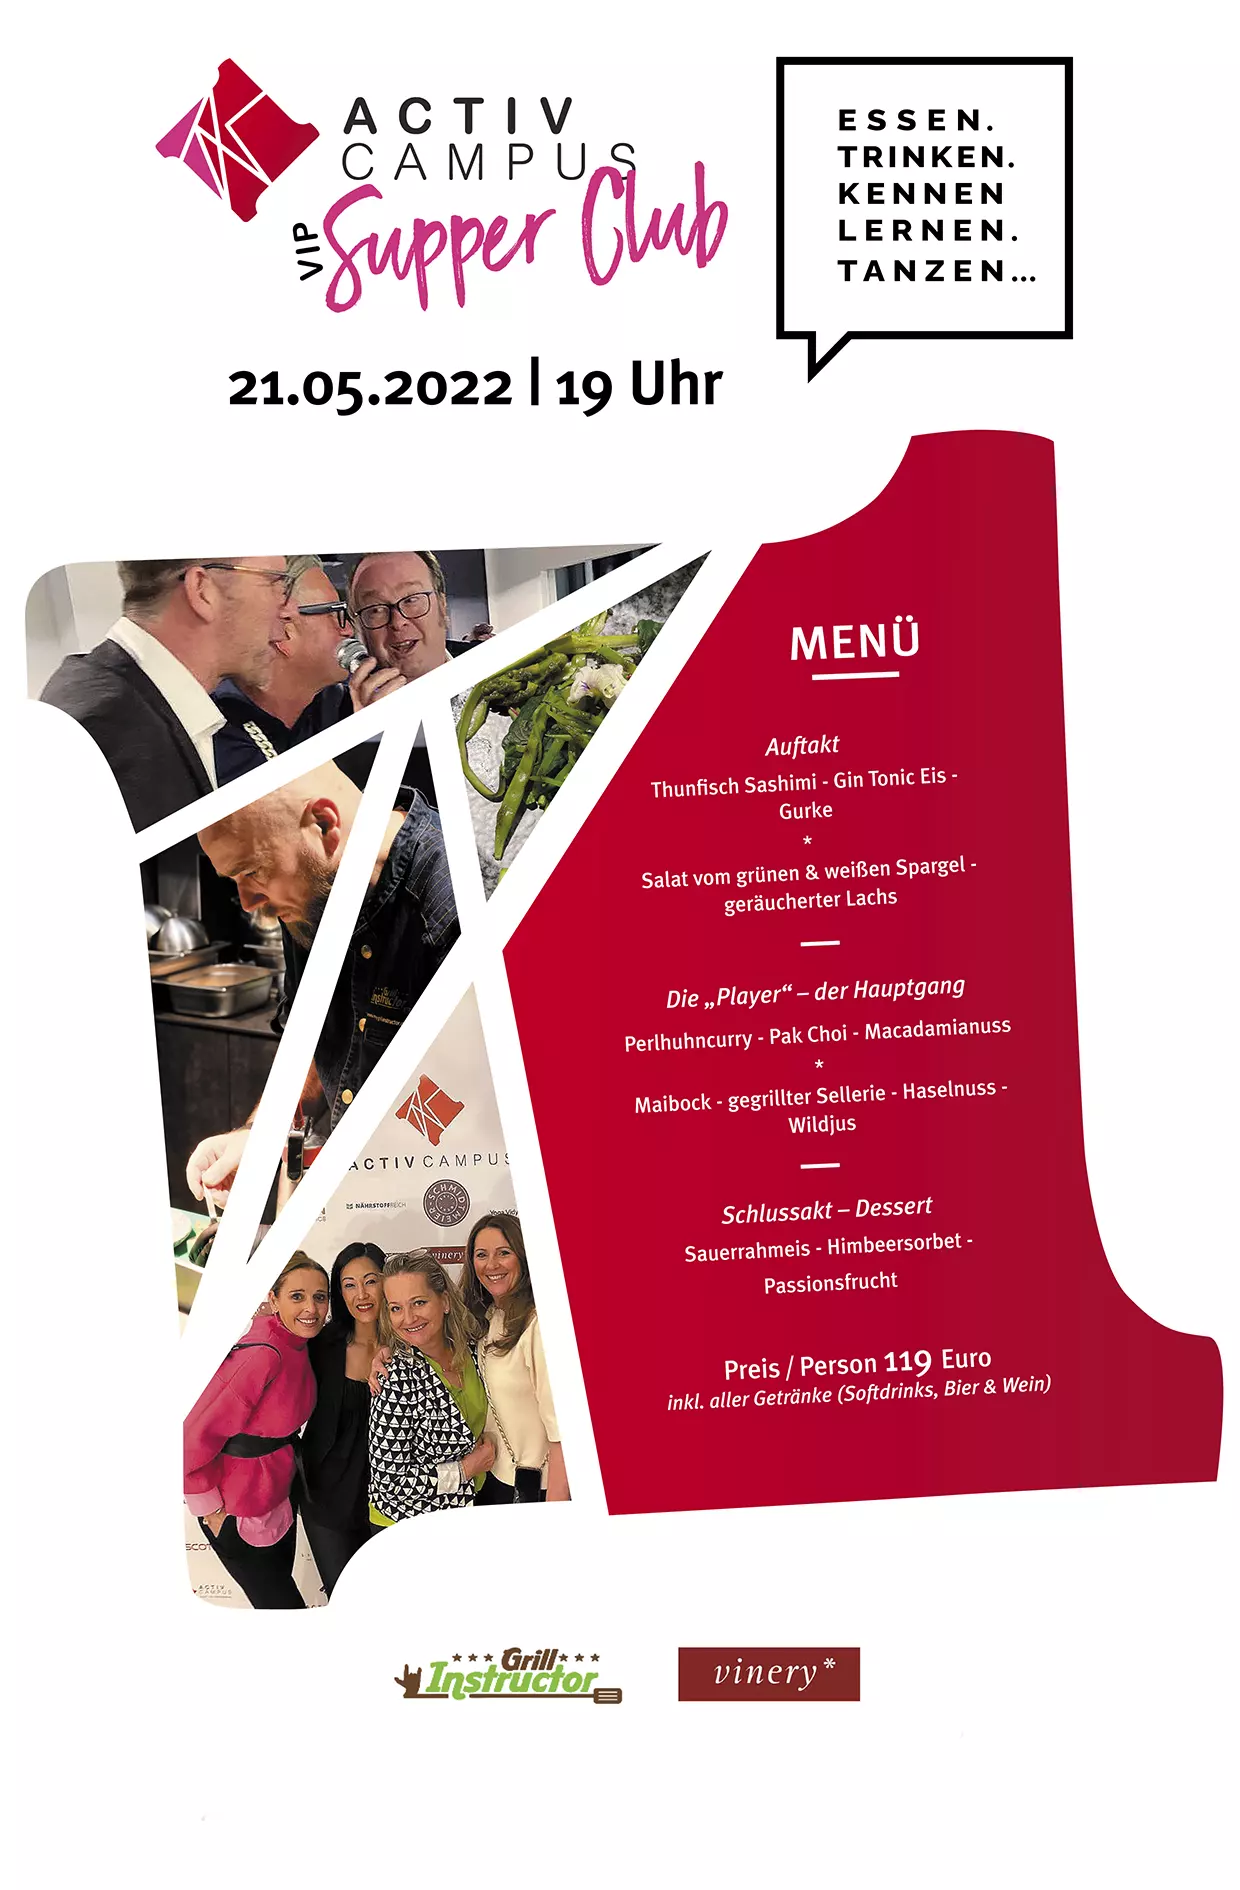 VIP Supper Club Menü für den 21.05.2022 um 19:00 Uhr im ACTIV CAMPUS in Bochum